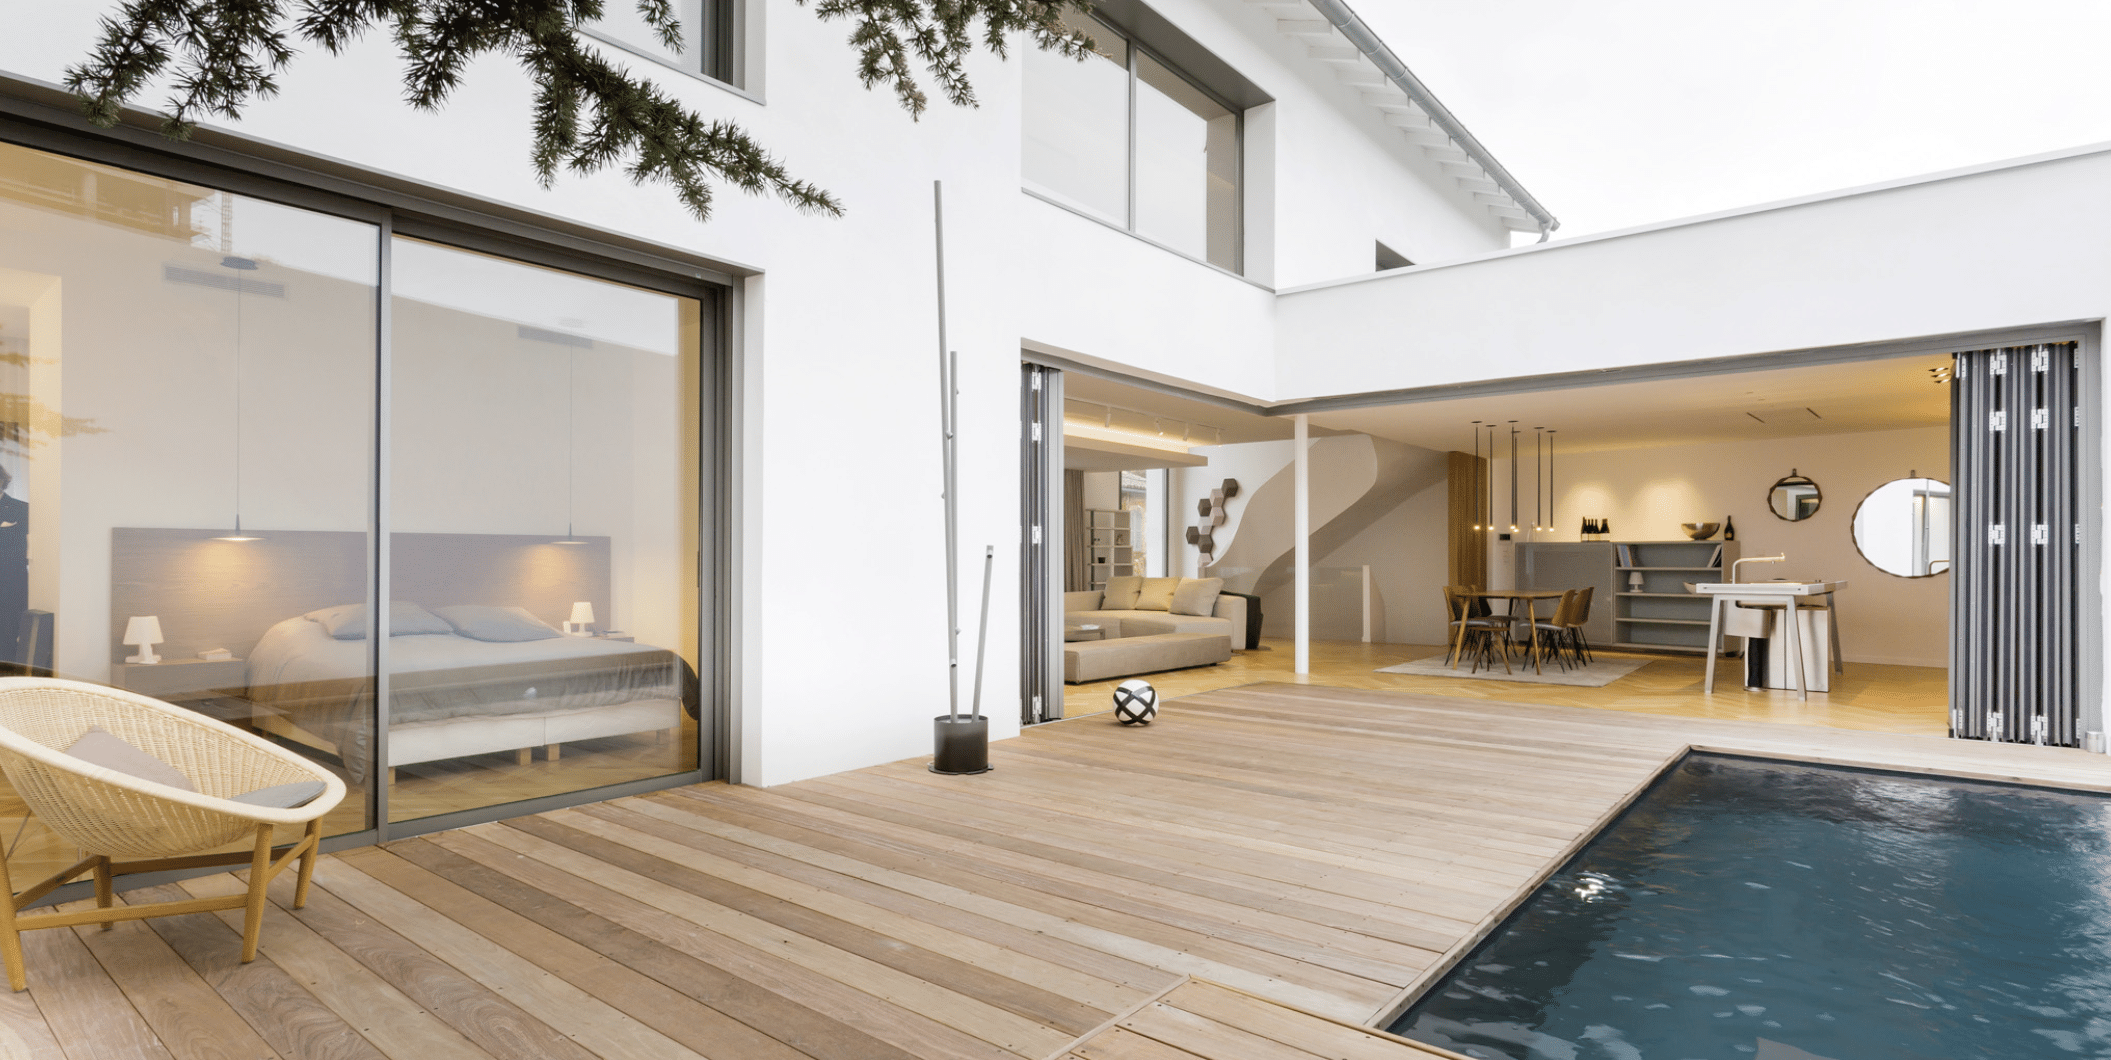 SOLARLUX präsentiert das übers Eck gehende Glasfaltfenster eines Einfamilienhauses mit Pool, Holzverbau rundherum und Zugang zur Küche und Wohnbereich.